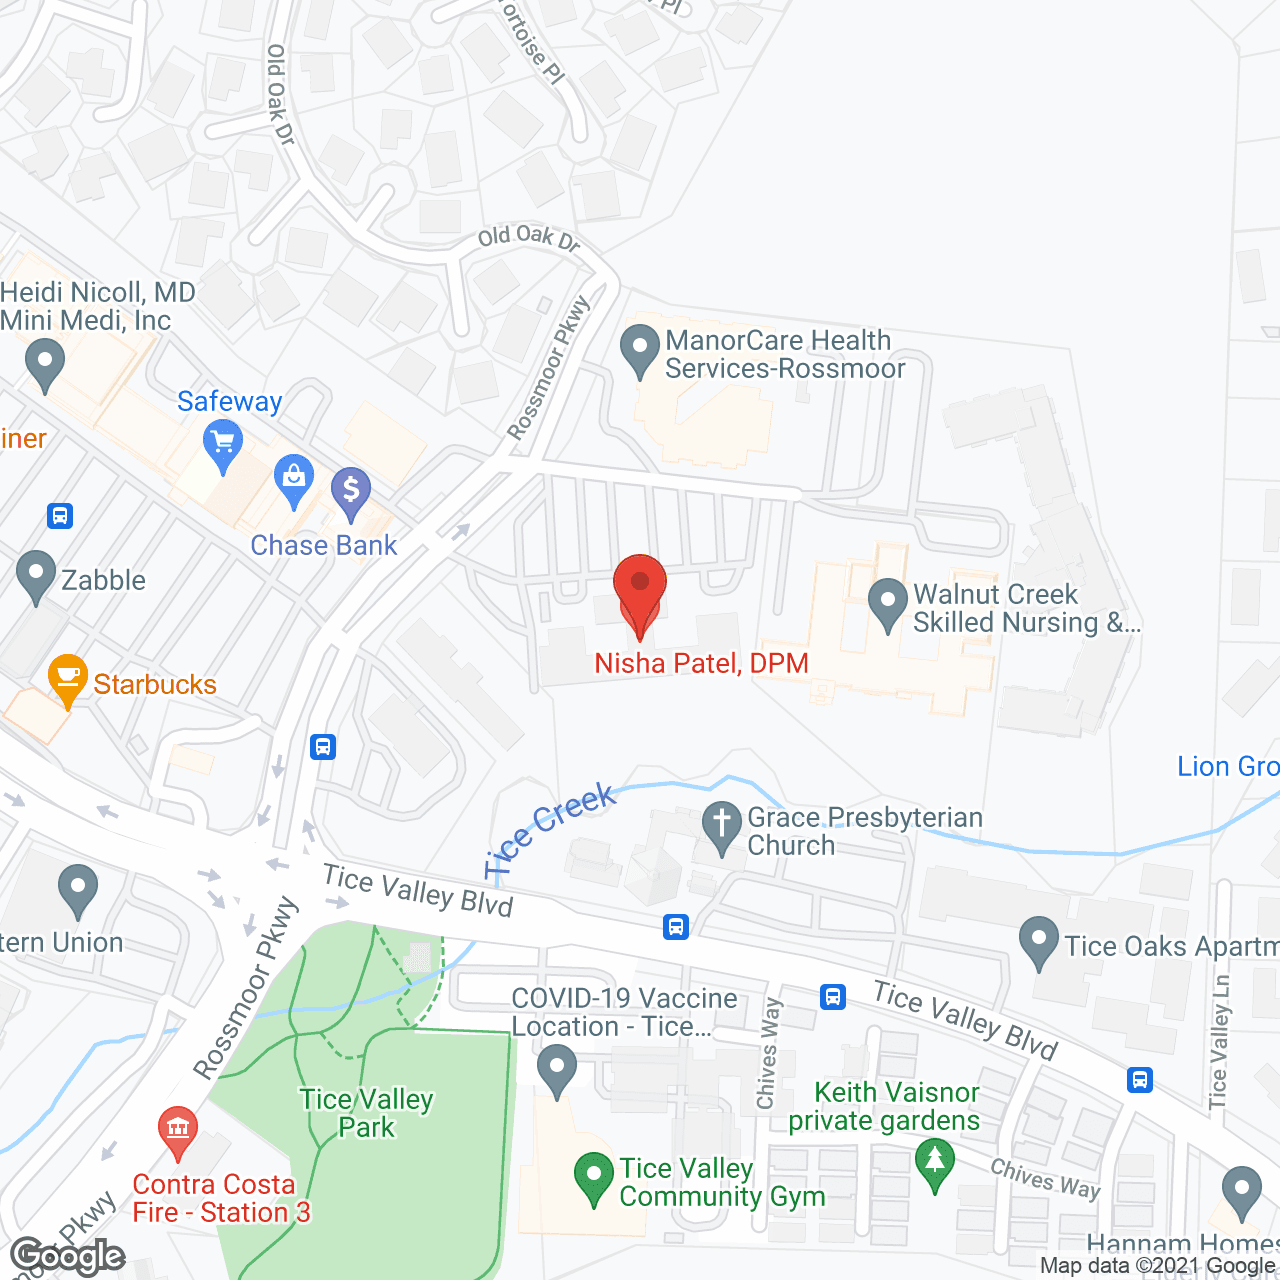 Rossmoor Home Health Agency in google map